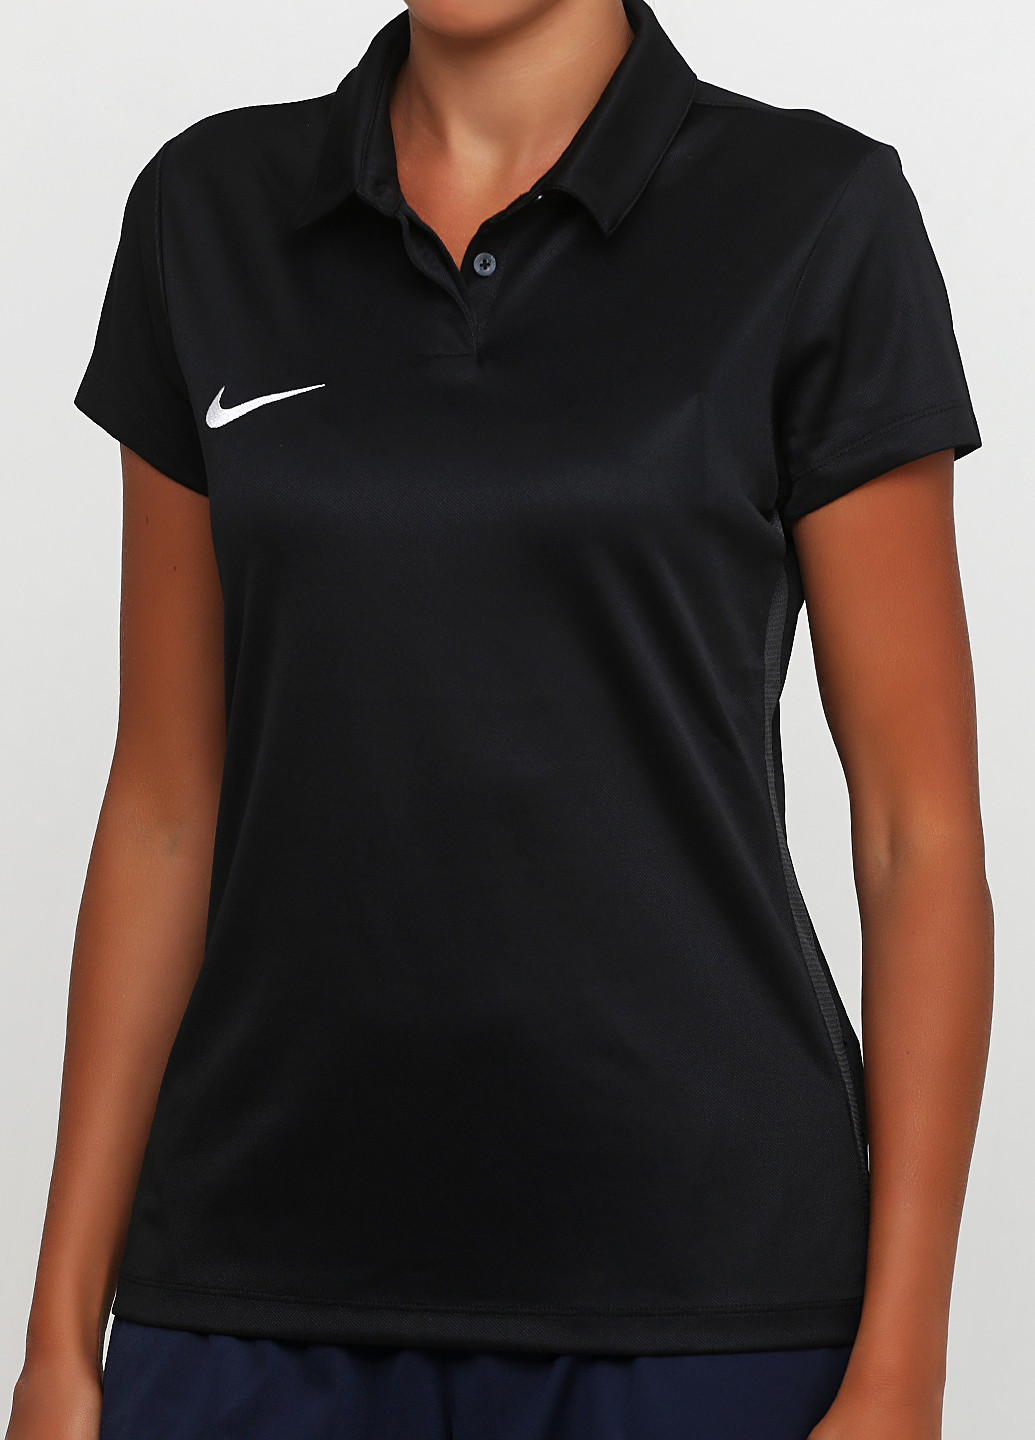 Футболка Nike Women's Dry Academy18 Football Polo 899986-010